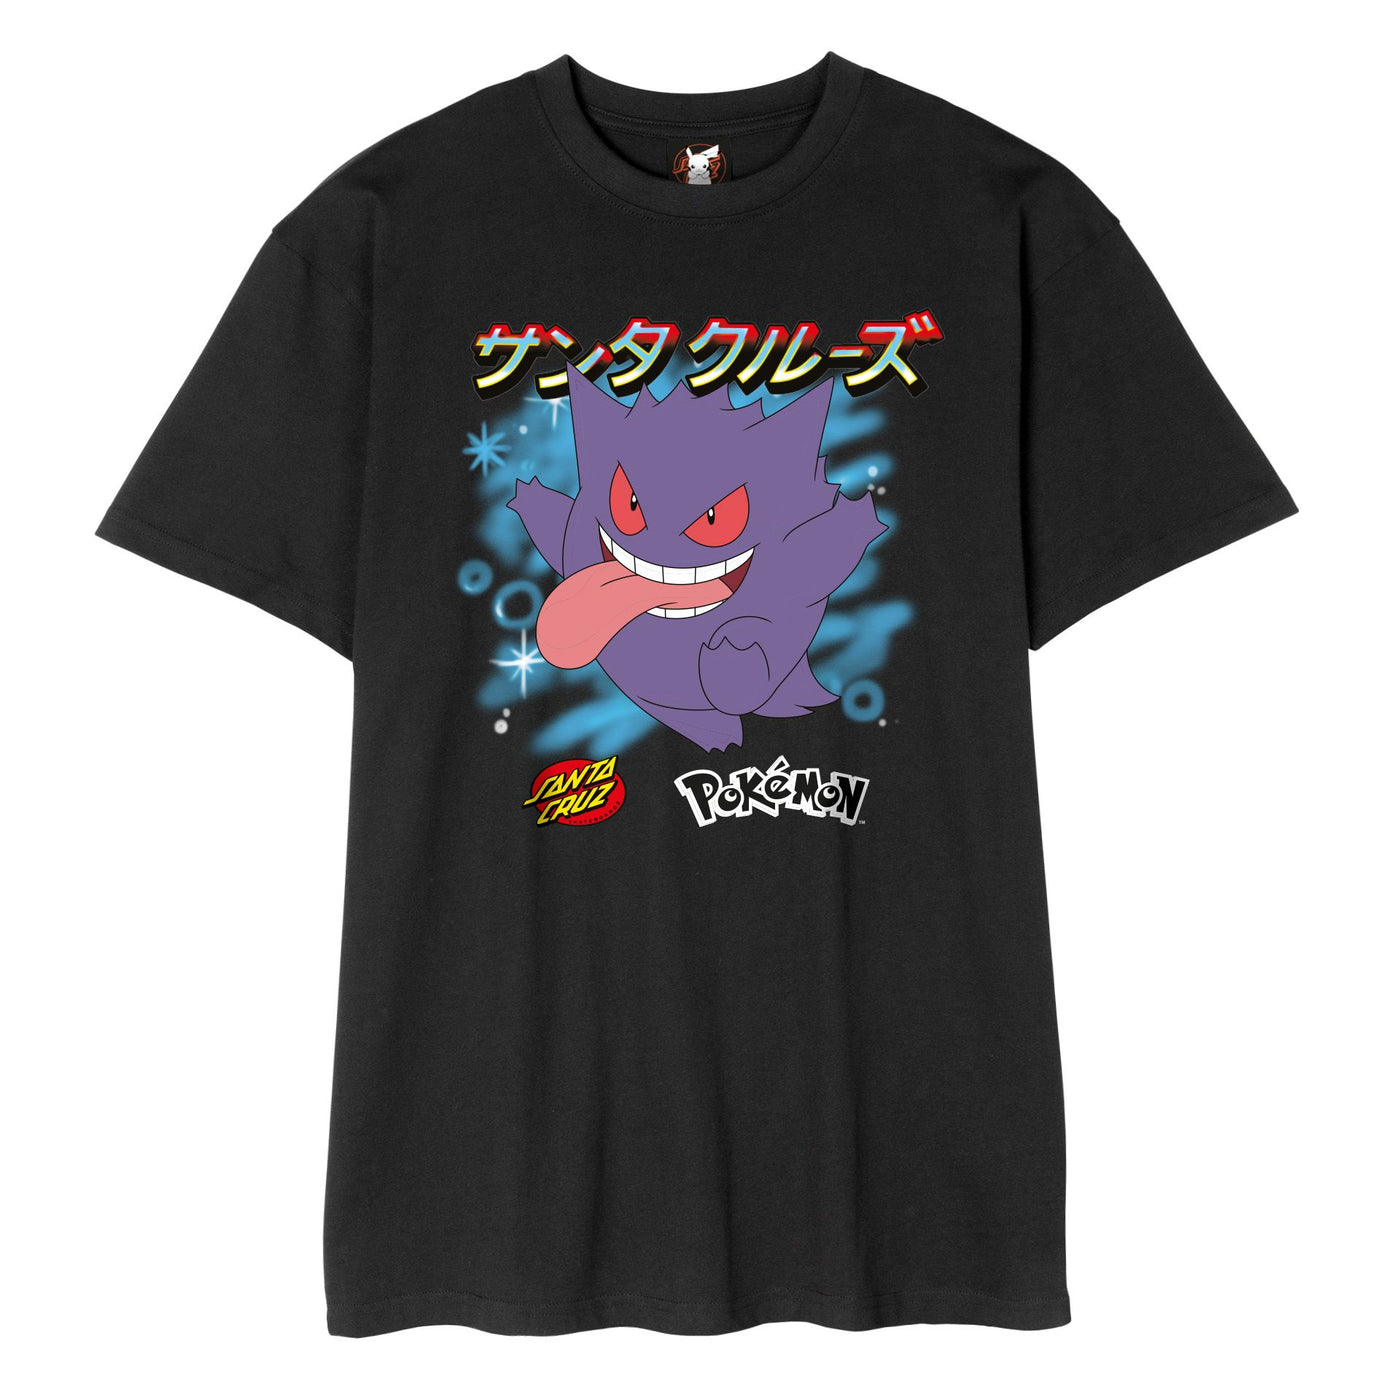 Camiseta Santa Cruz X Pokémon Fantasma Tipo 3 - Negro